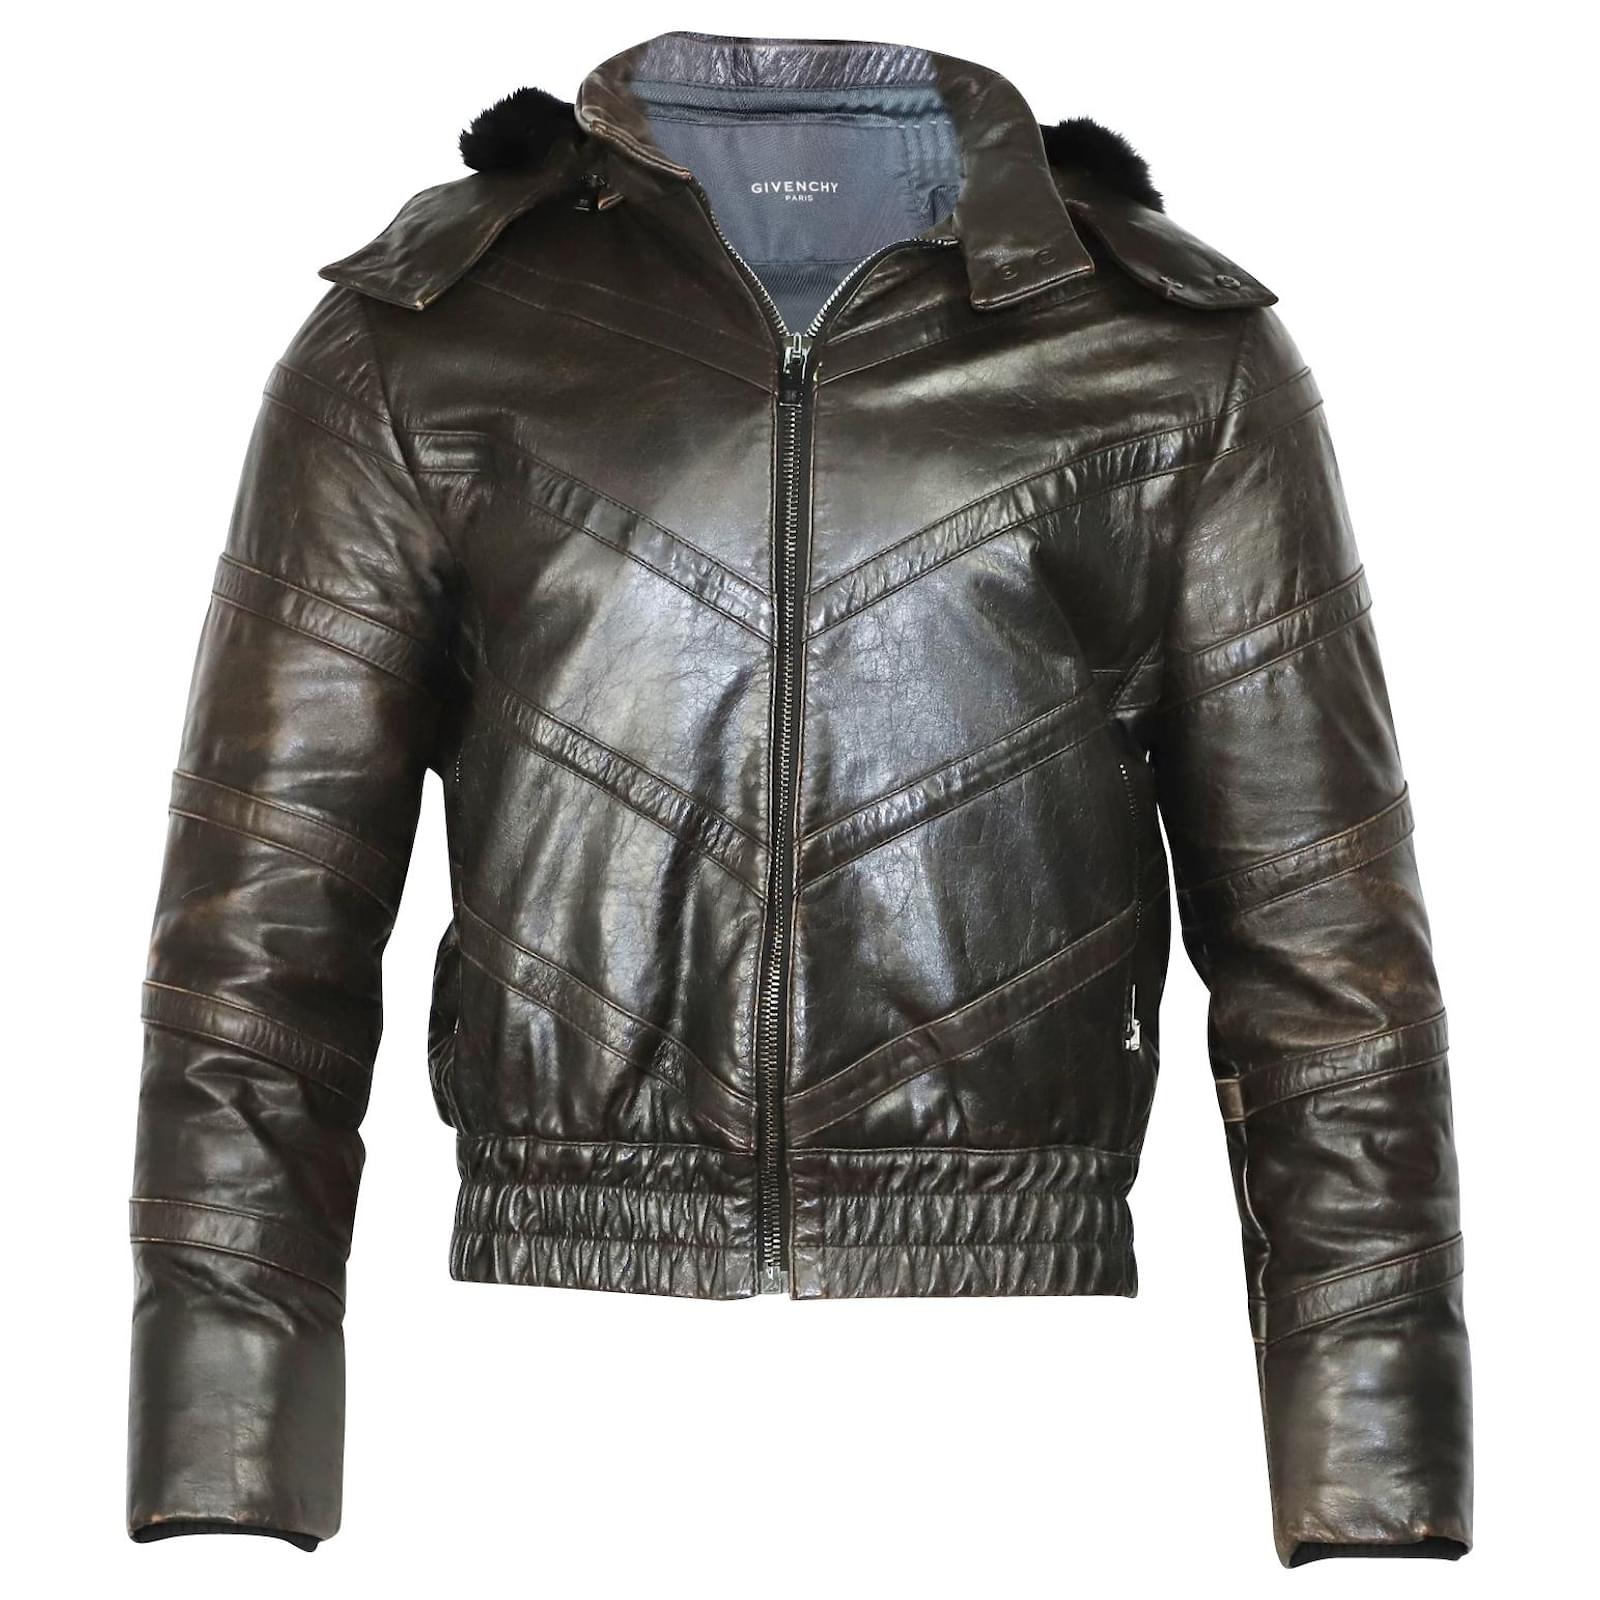 ありません GIVENCHY - Givenchy Leather Hoodie Jacketの サイズ